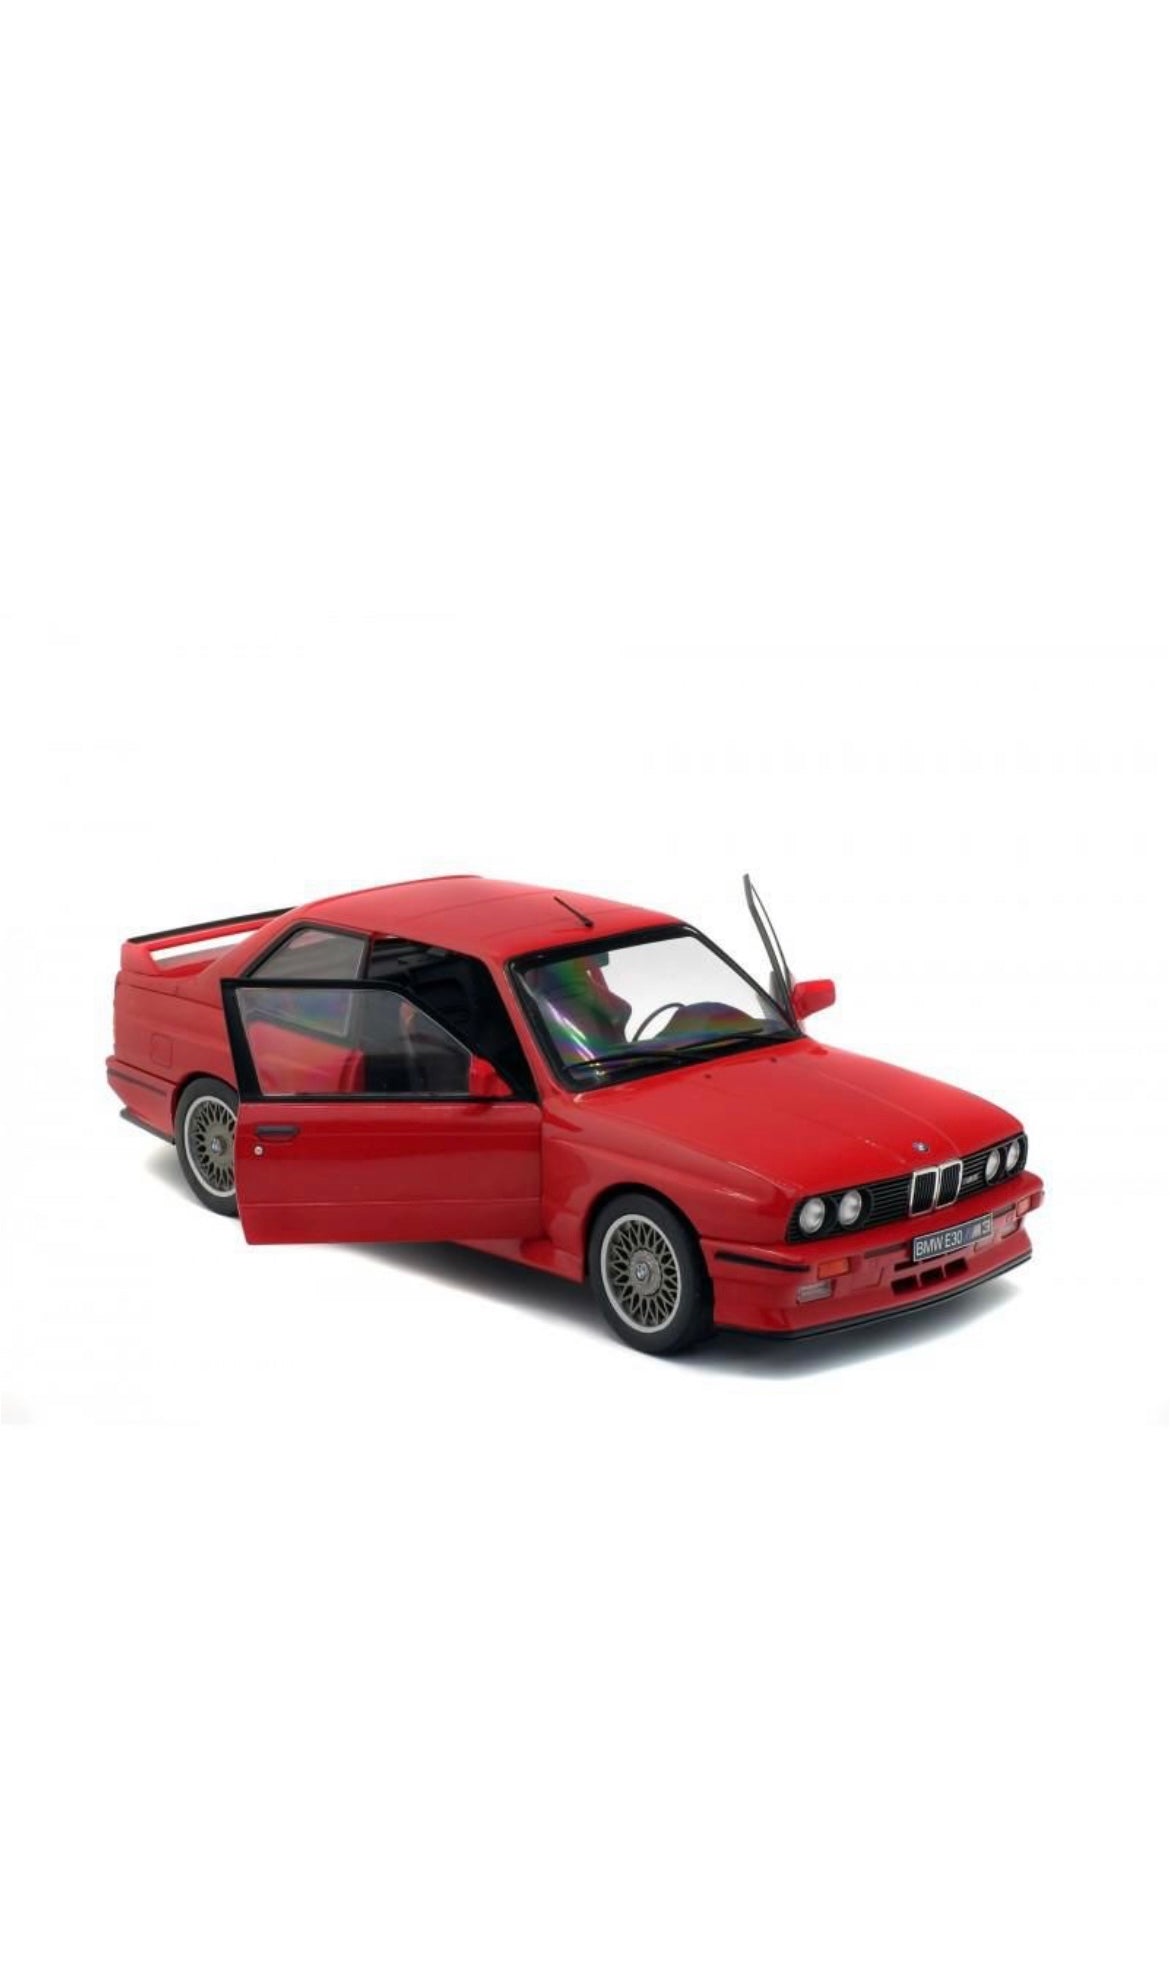 SOLIDO 1:18 SCALE MODEL CAR BMW E30 M3